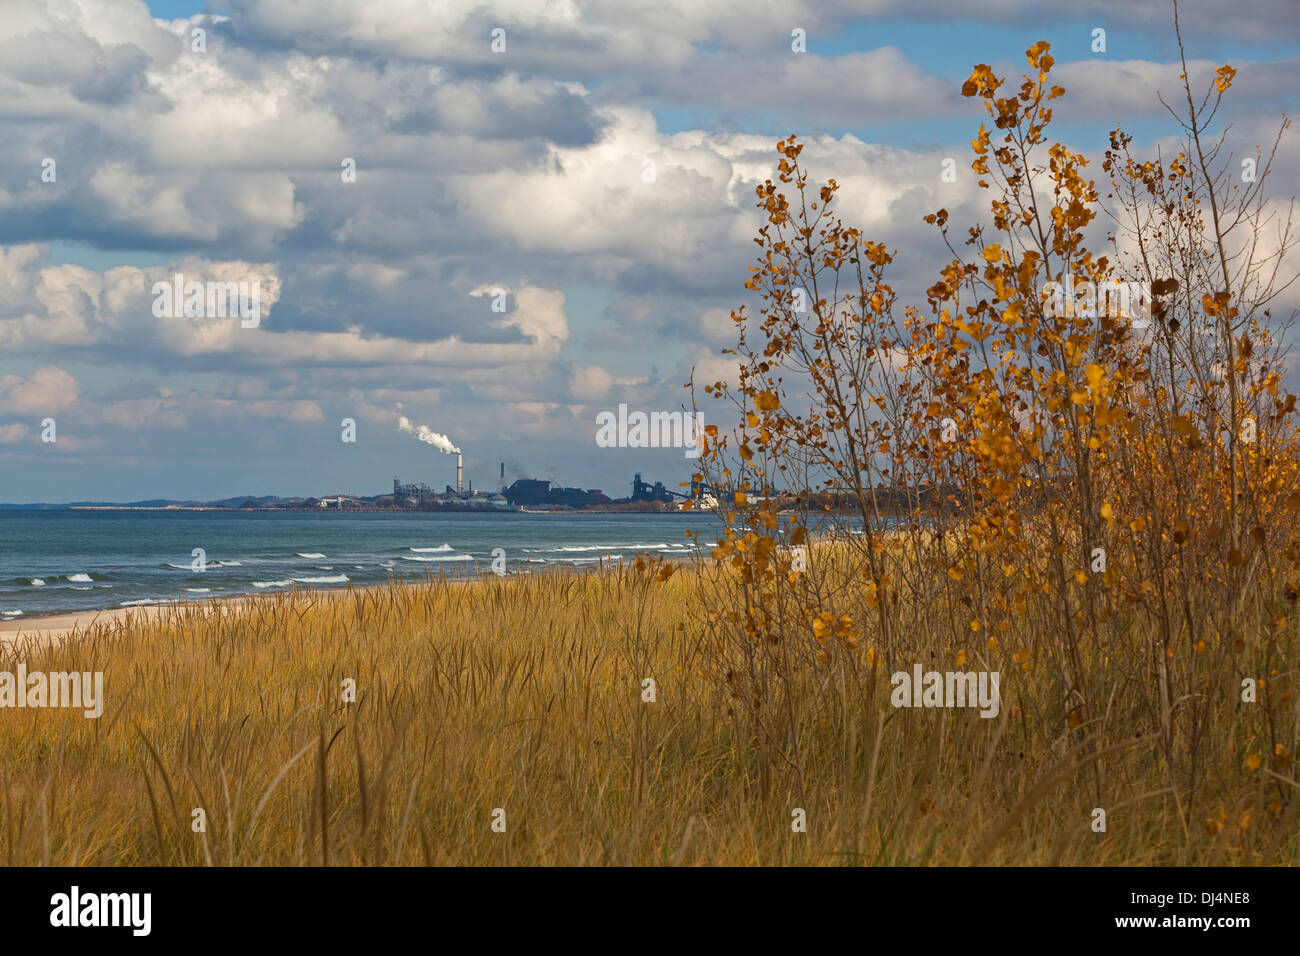 Gary, Indiana - Stahlwerke und die Indiana Dunes National Lakeshore koexistieren am südlichen Ufer des Lake Michigan. Stockfoto